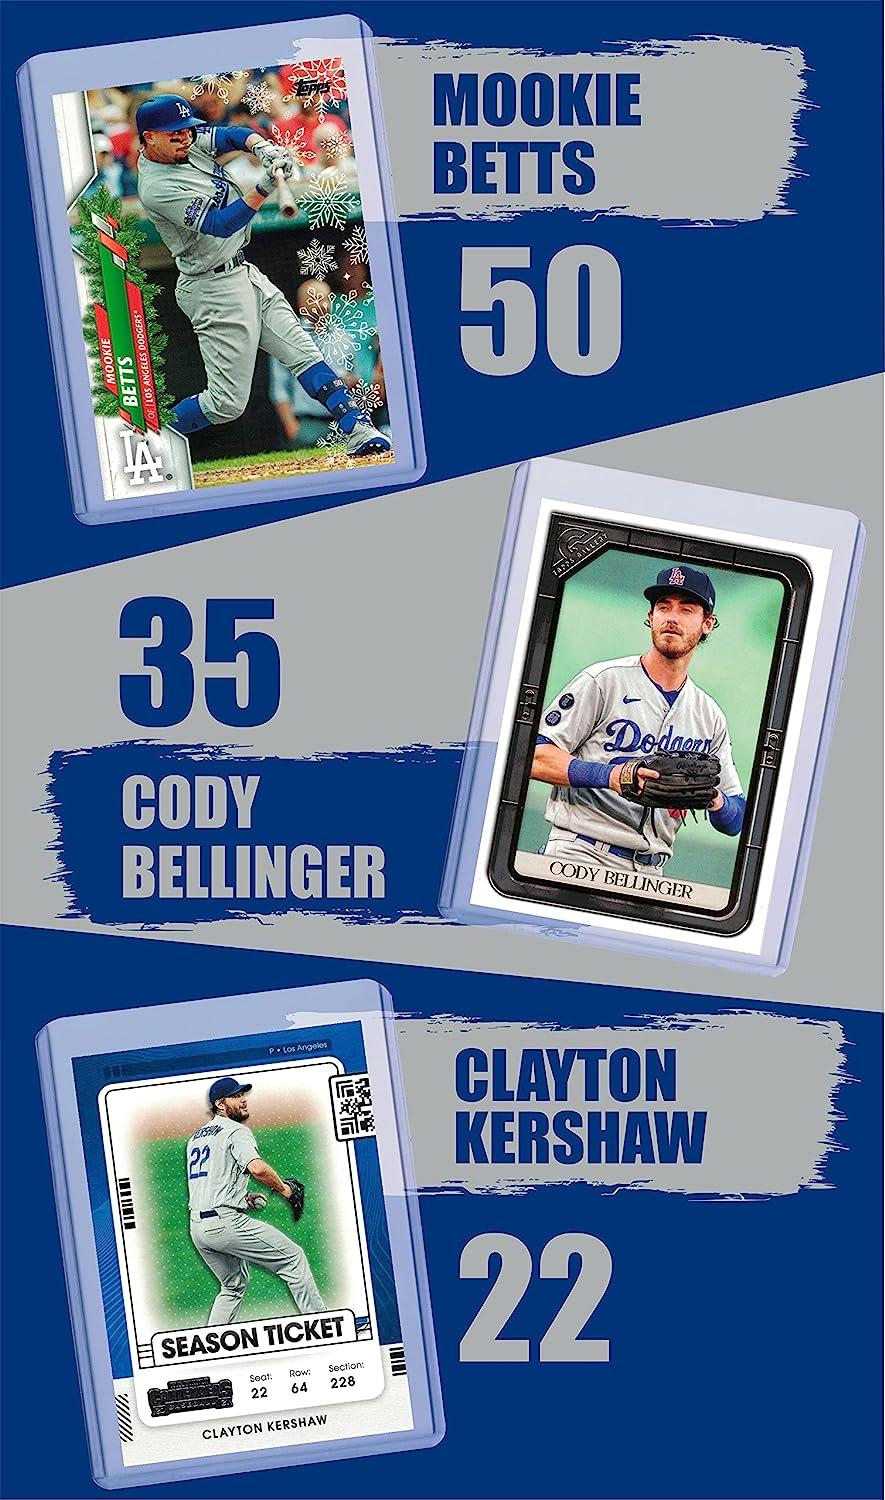 Los Angeles Dodgers Baseball Cards: Trea Turner, Freddie Freeman, Mookie  Betts, Cody Bellinger, Clayton Kershaw, Max